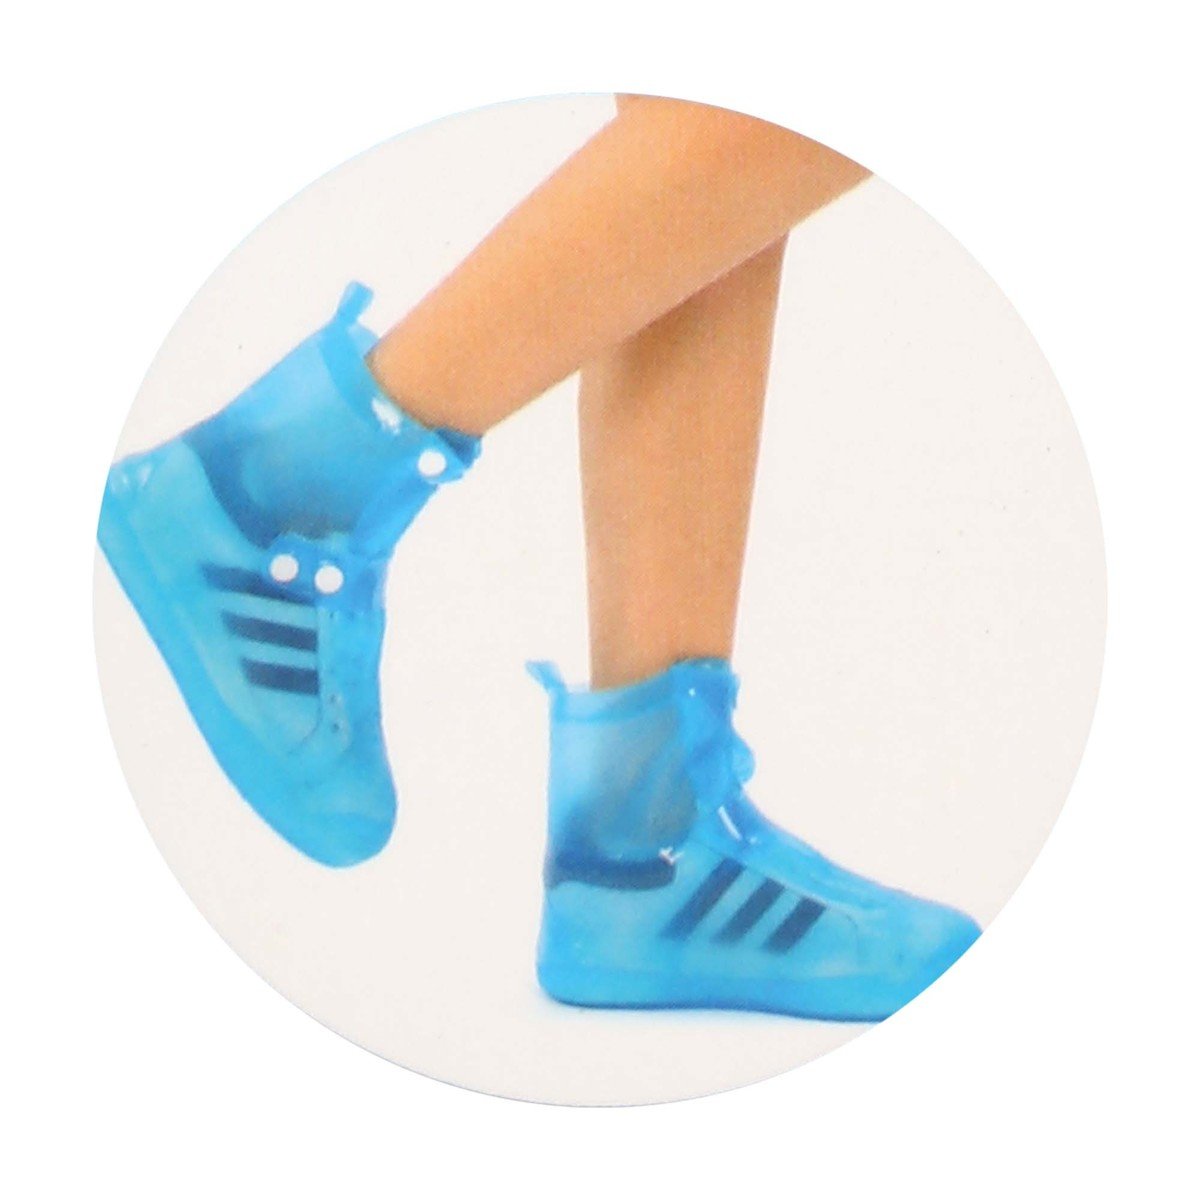 باورمان أحذية المطر PVC بمقاس XXL بألوان متنوعة